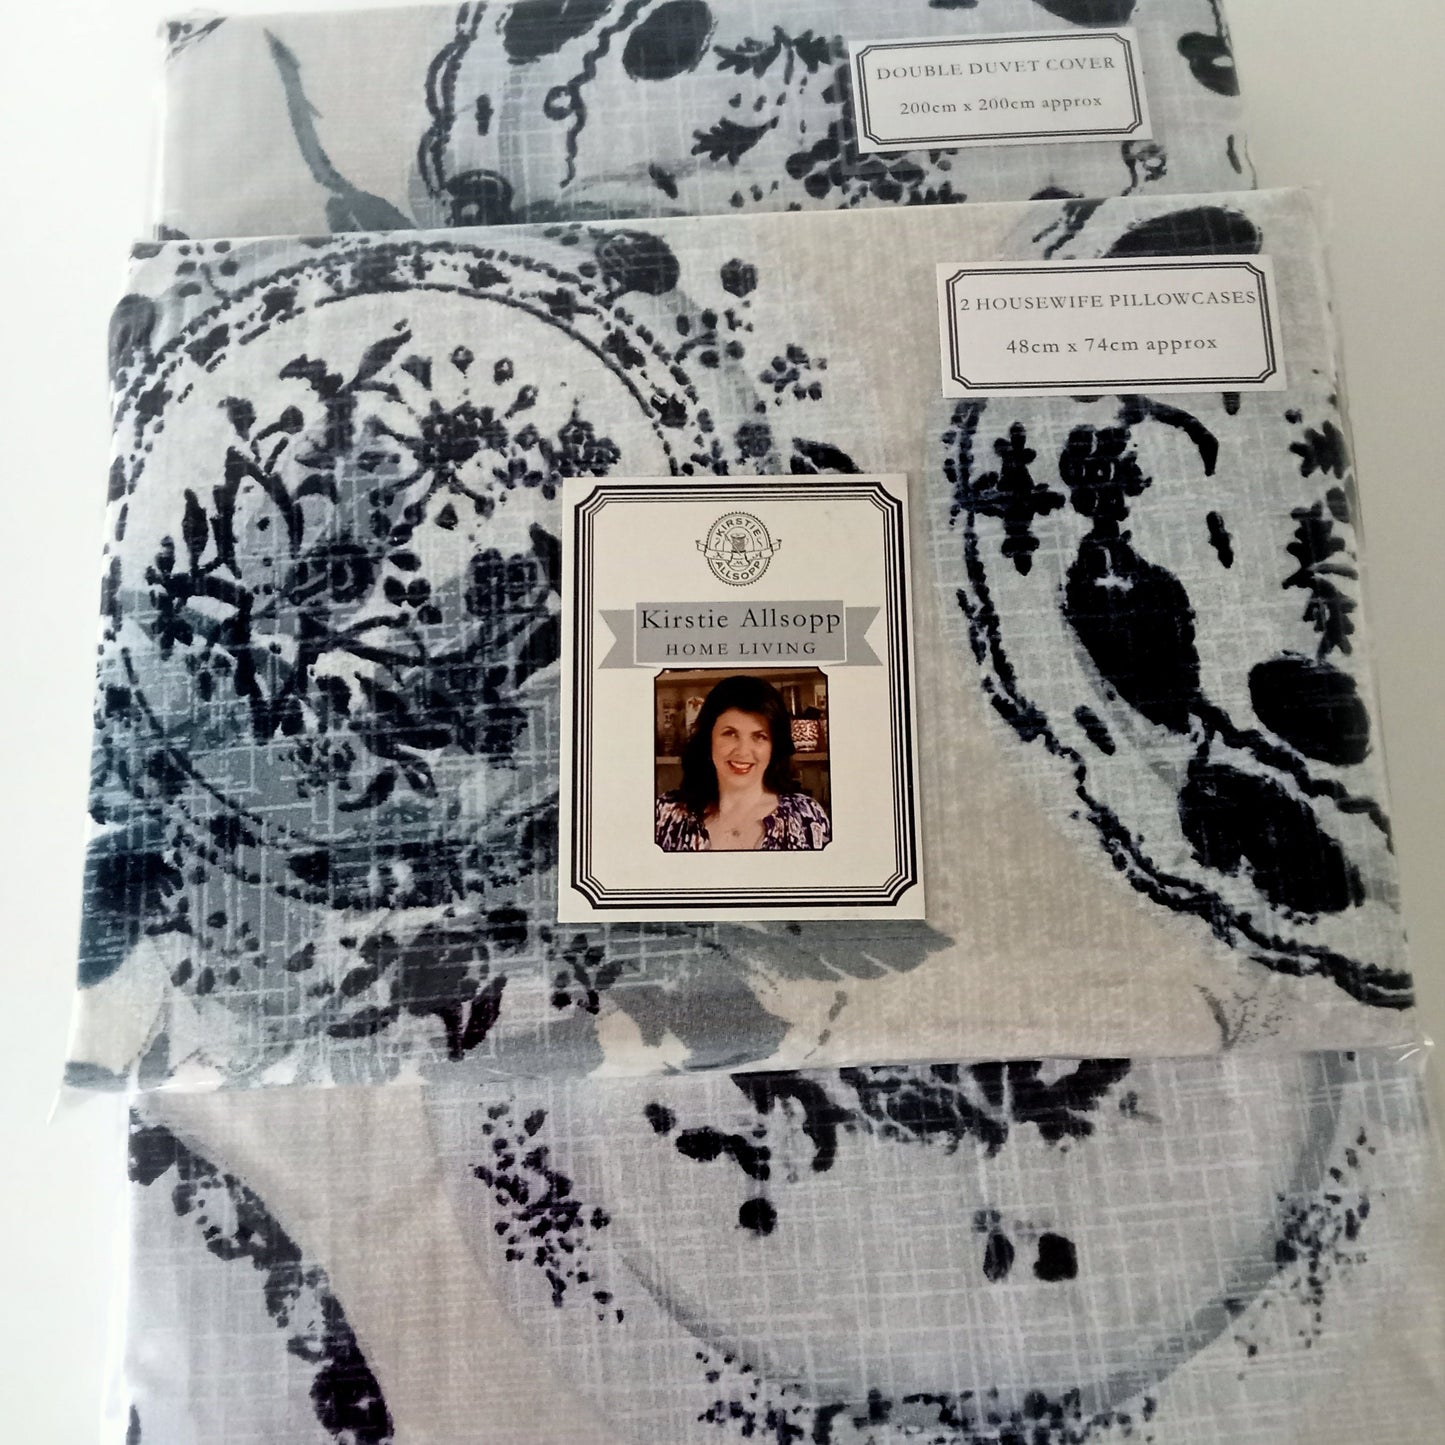 Jocelyn Duvet Cover & Pillowcases by Kirstie Allsopp